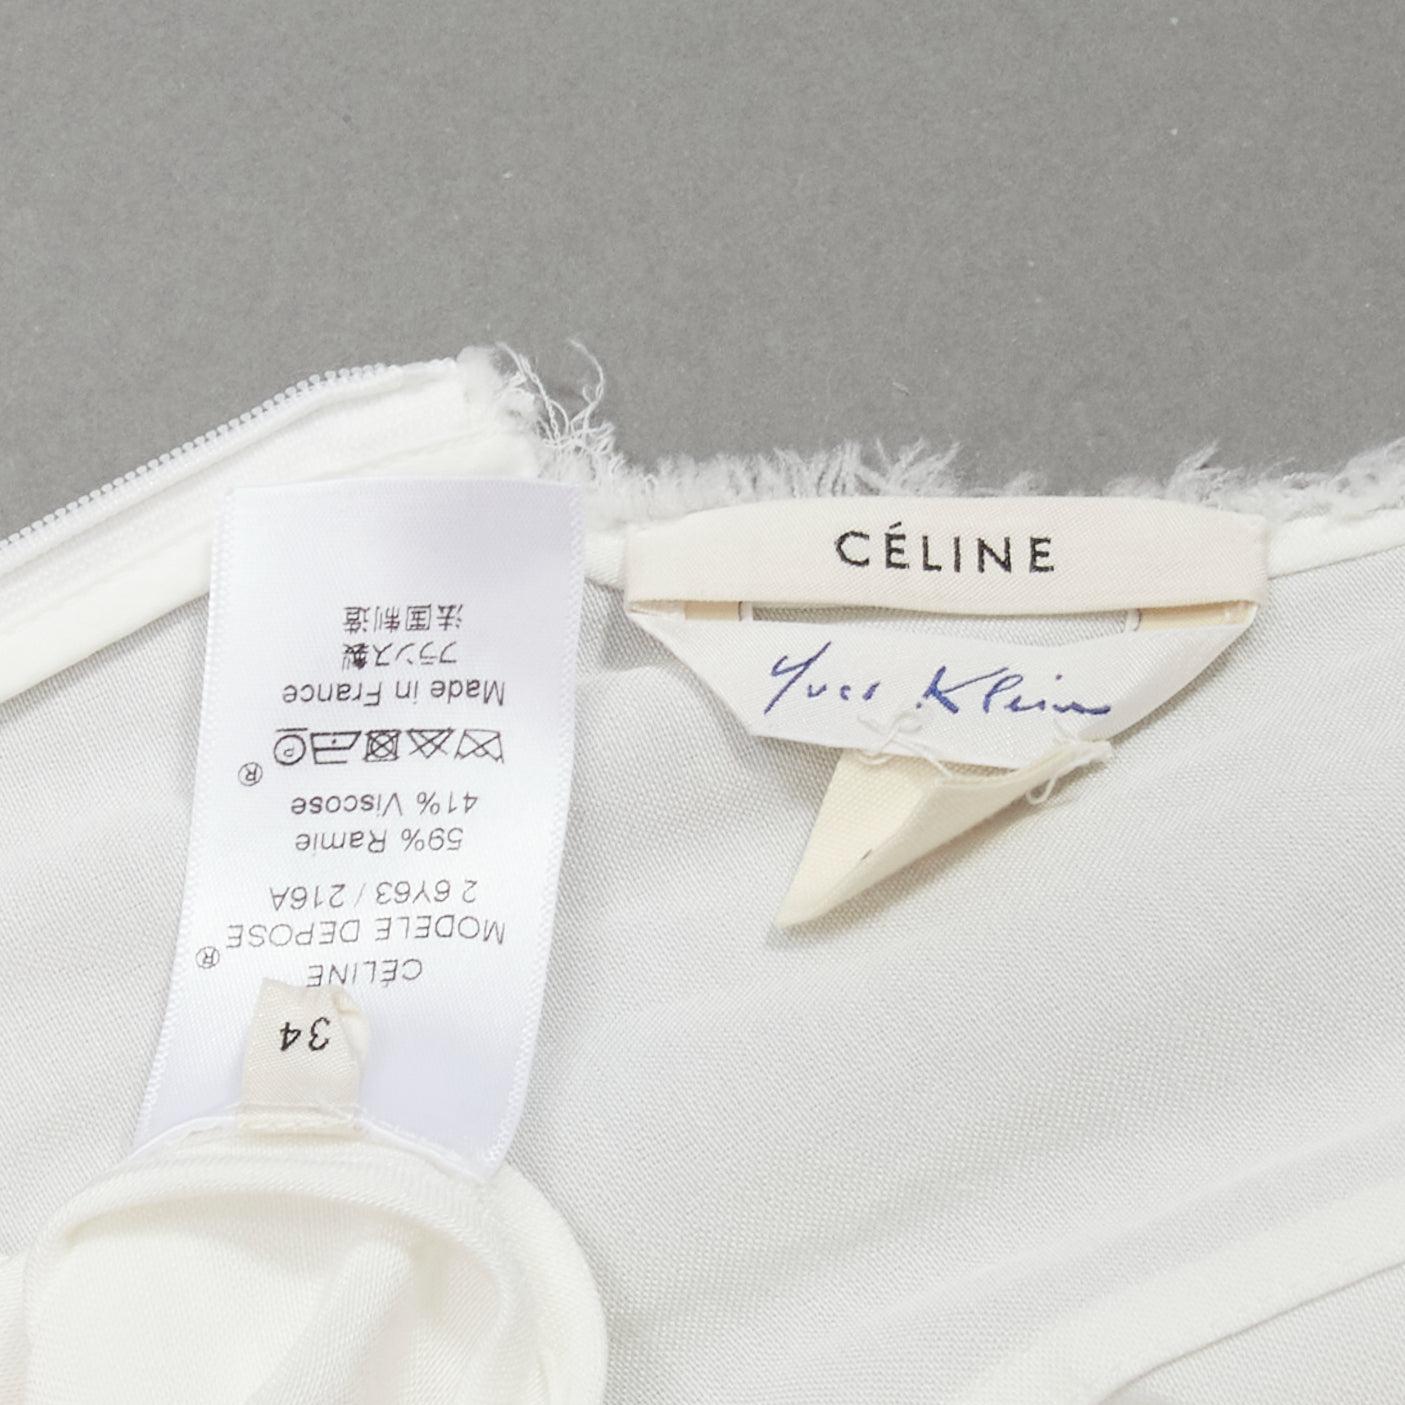 OLD CELINE Phoebe Philo défilé 2017 - Yves Klein  Robe blanche imprimée sur le corps FR34  5